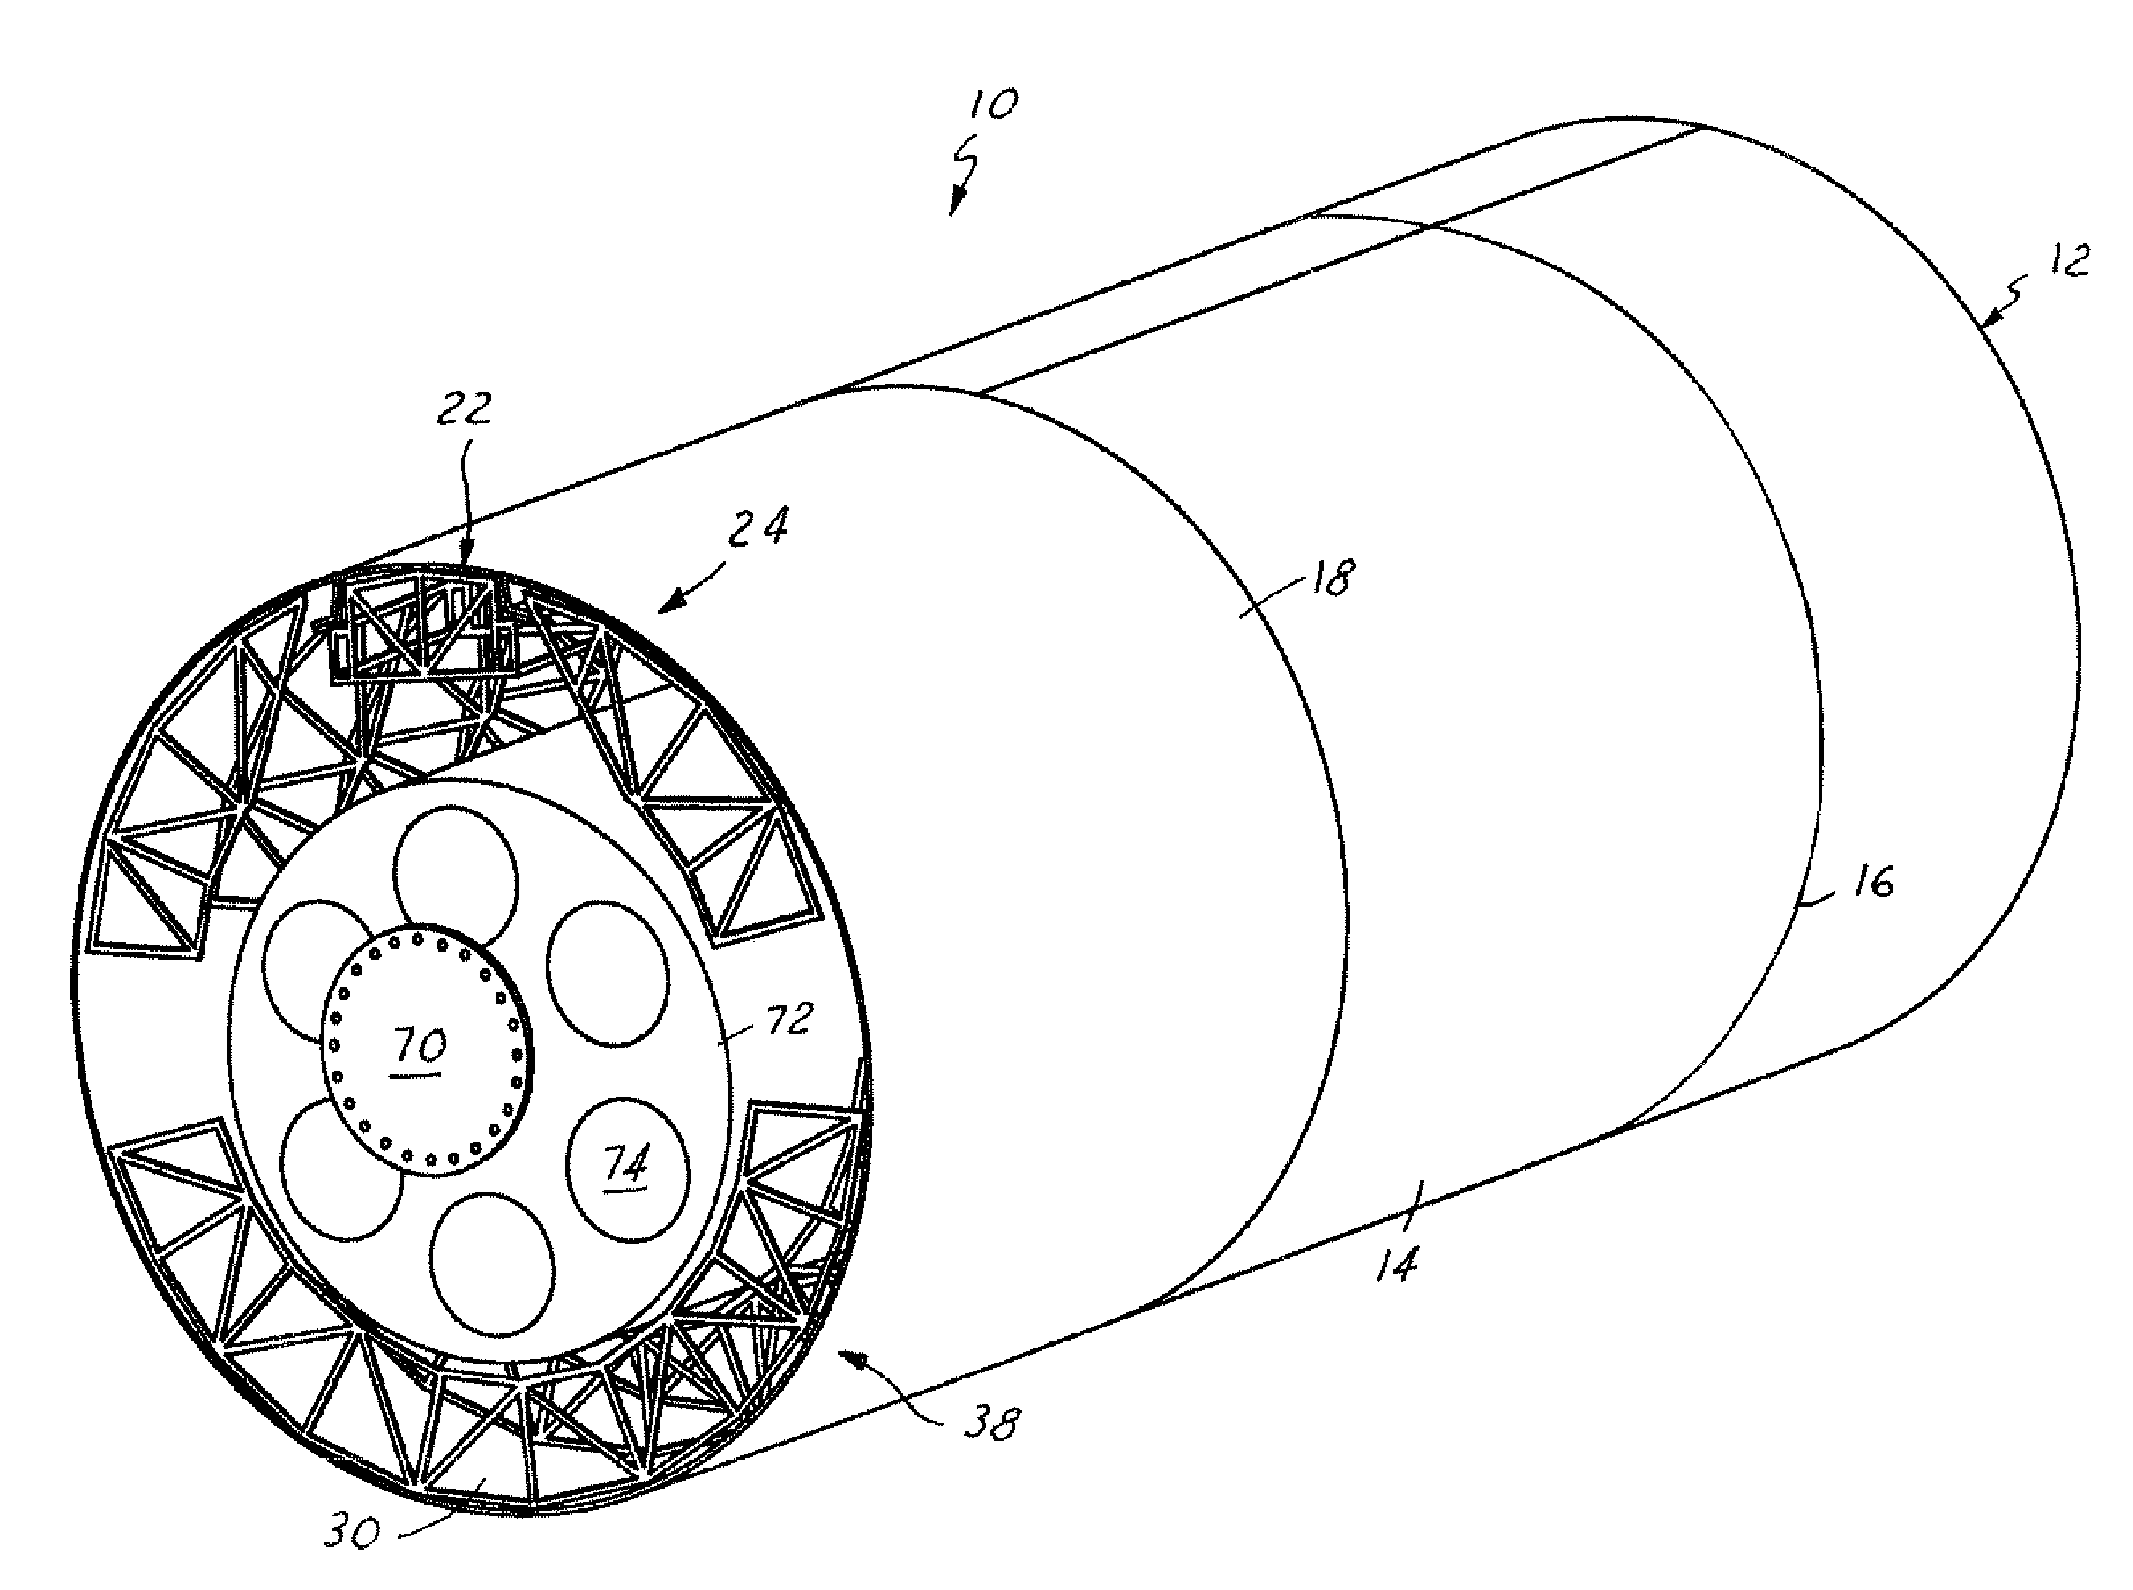 Segmented flexible barrel lay-up mandrel